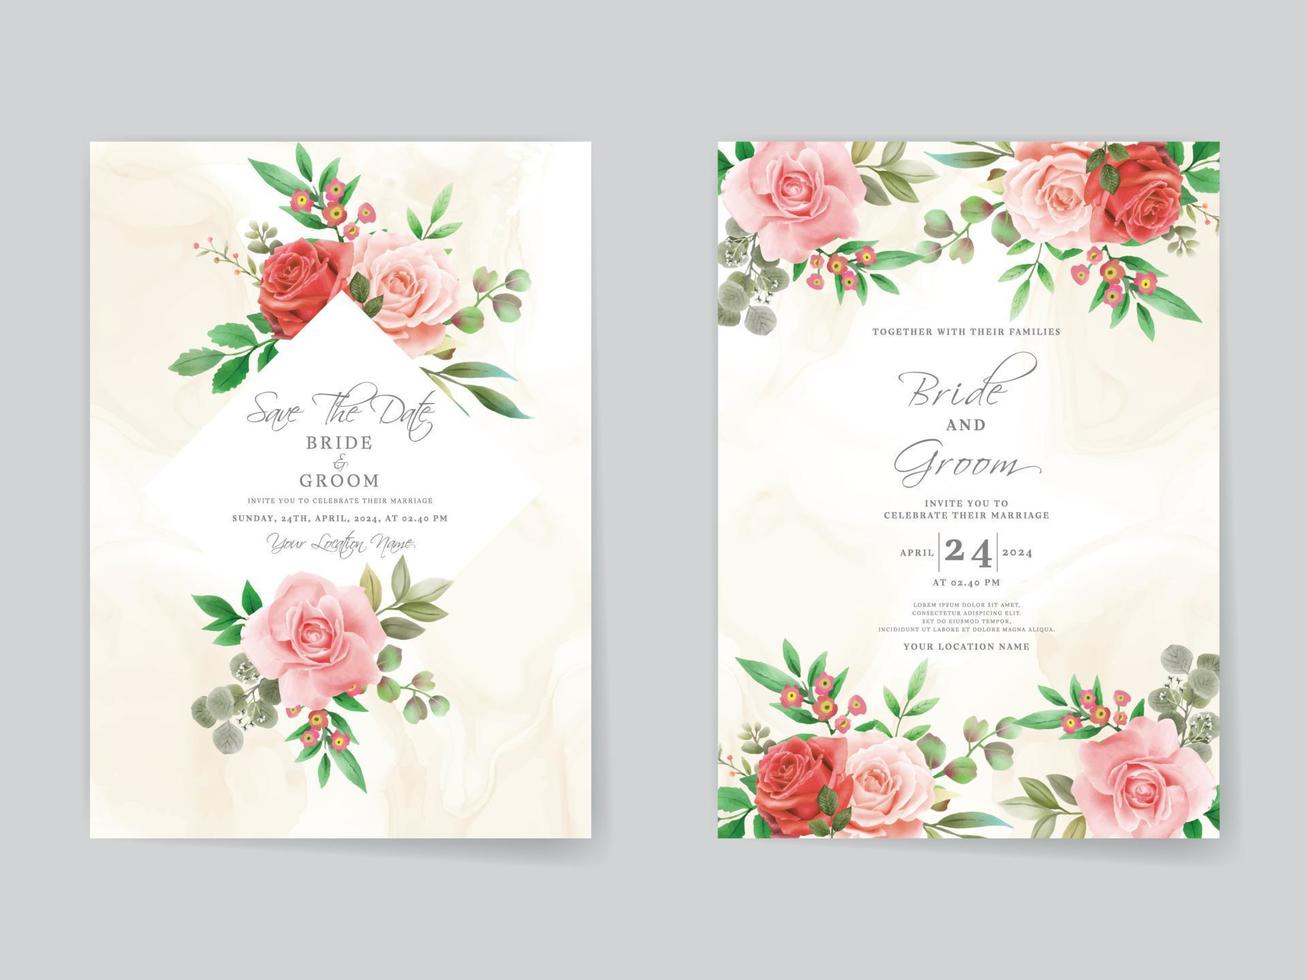 plantilla de tarjeta de invitación de boda de rosas rojas románticas vector